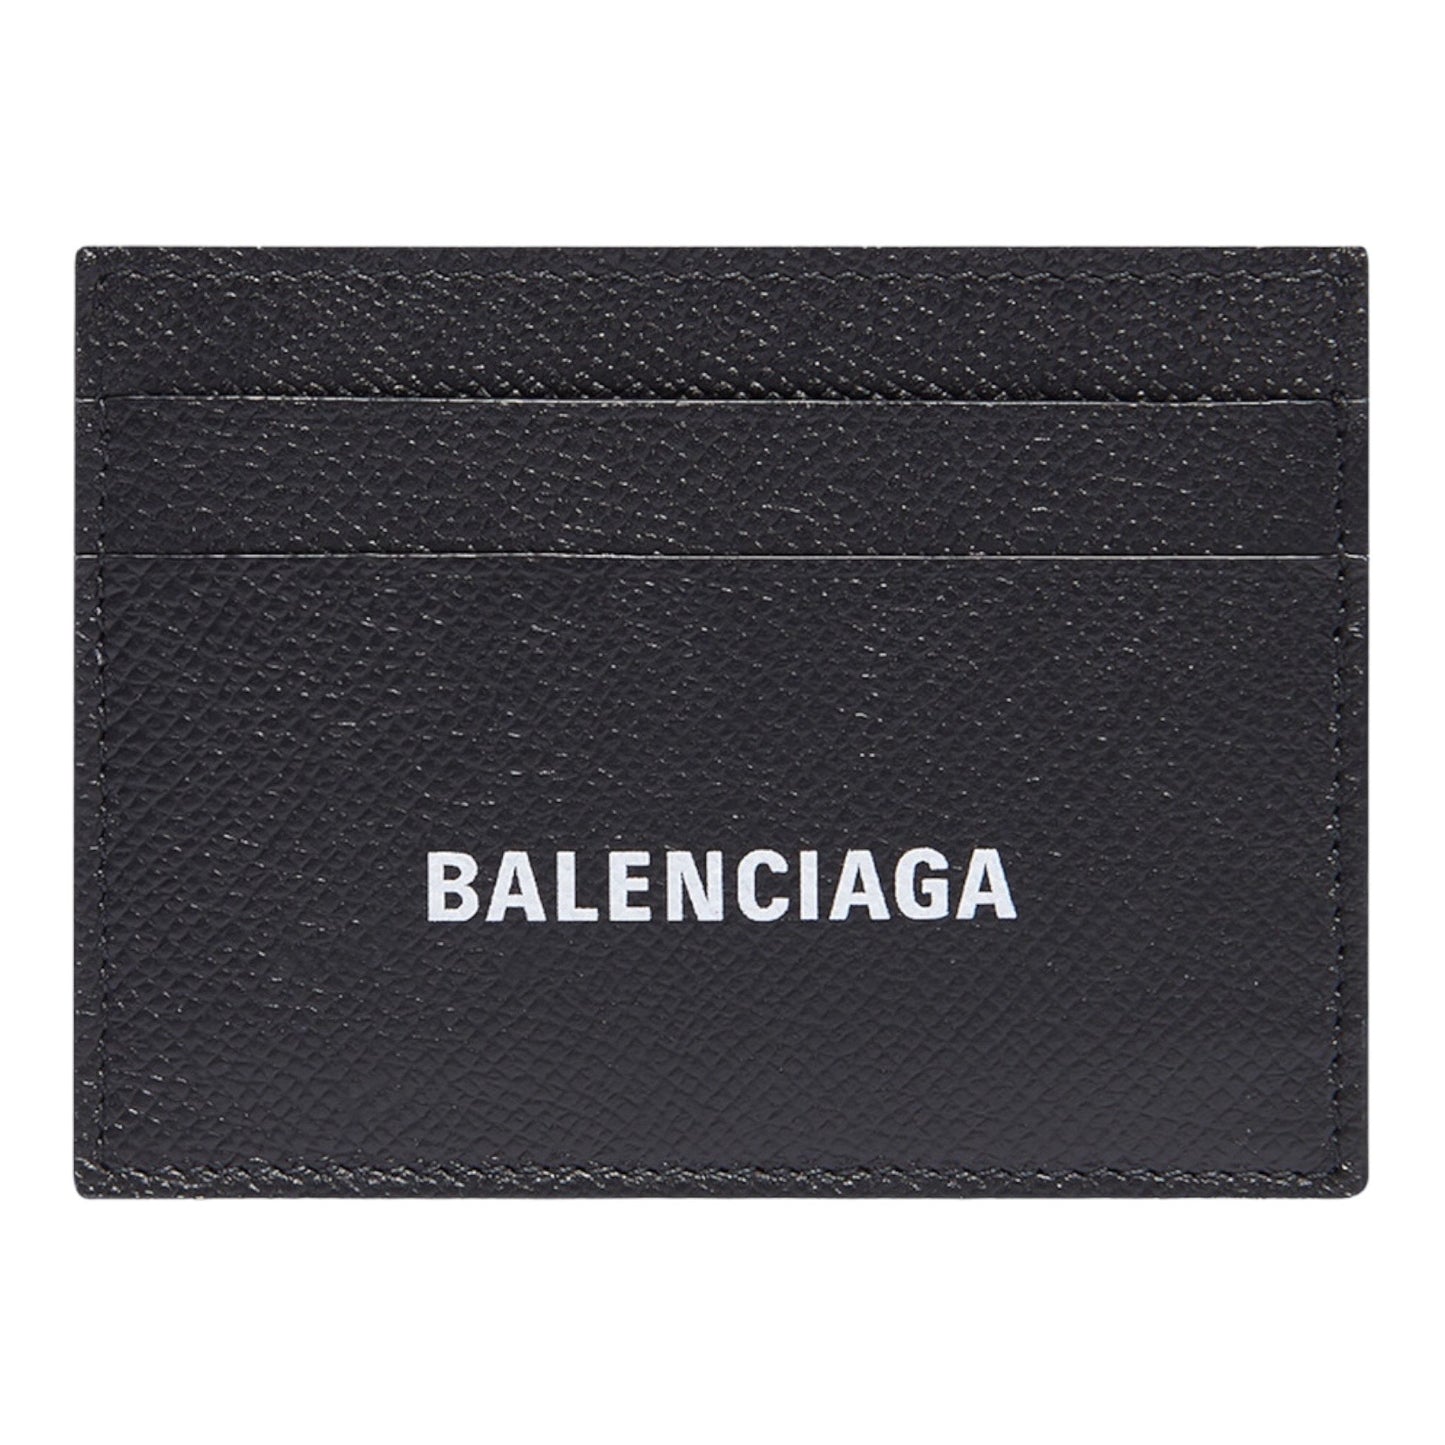 Balenciaga Cash Cardholder